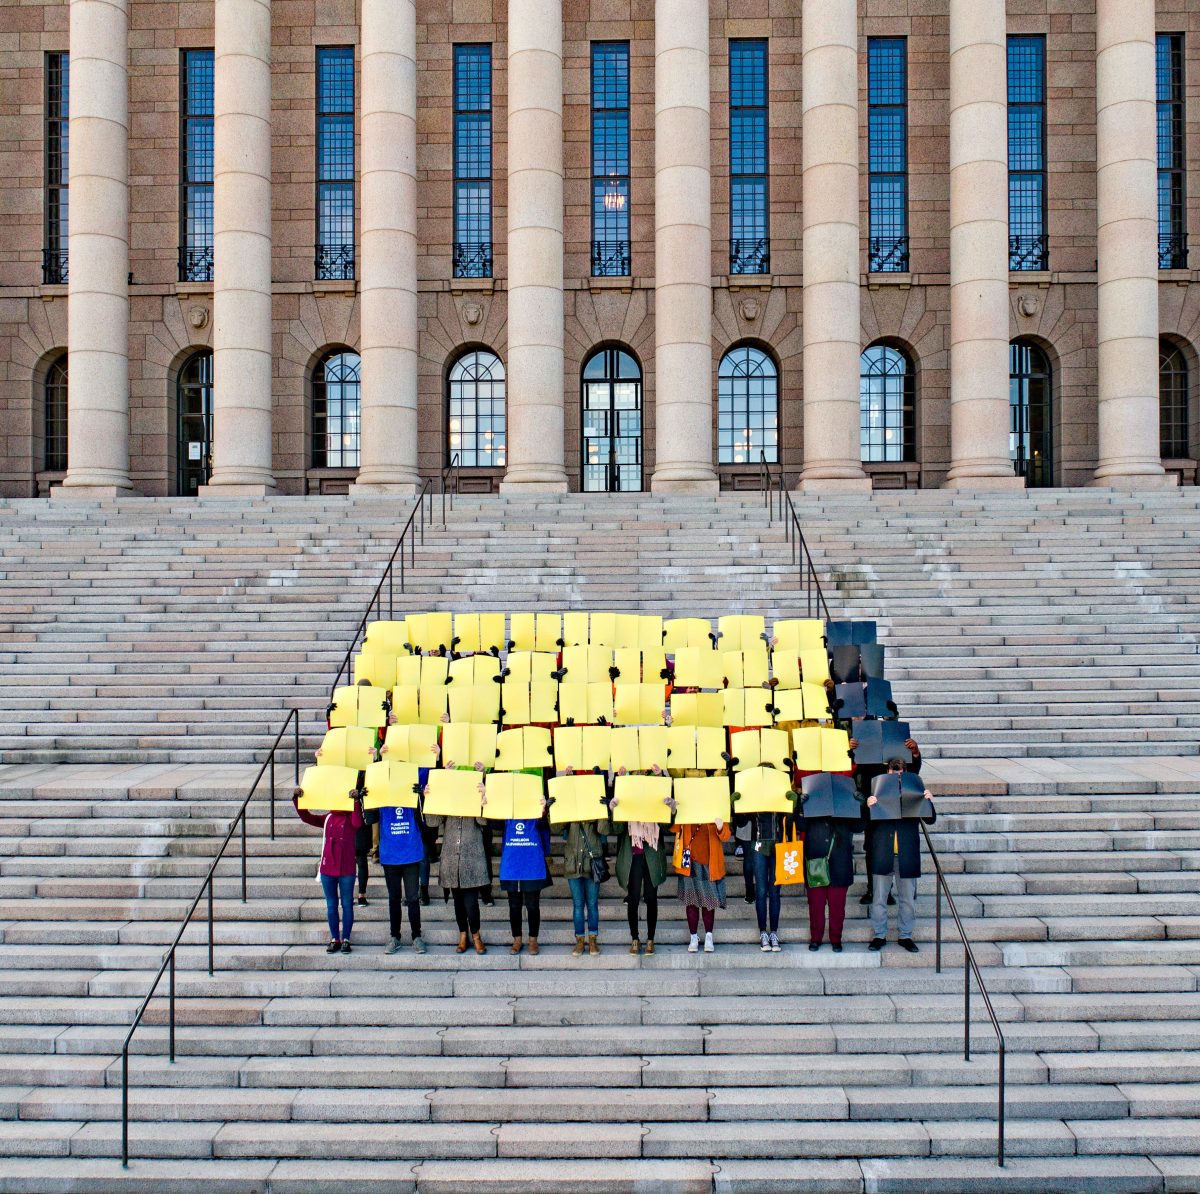 Ihmisiä eduskuntatalon portailla pitämässä kylttejä joista suurin osa on keltaisia